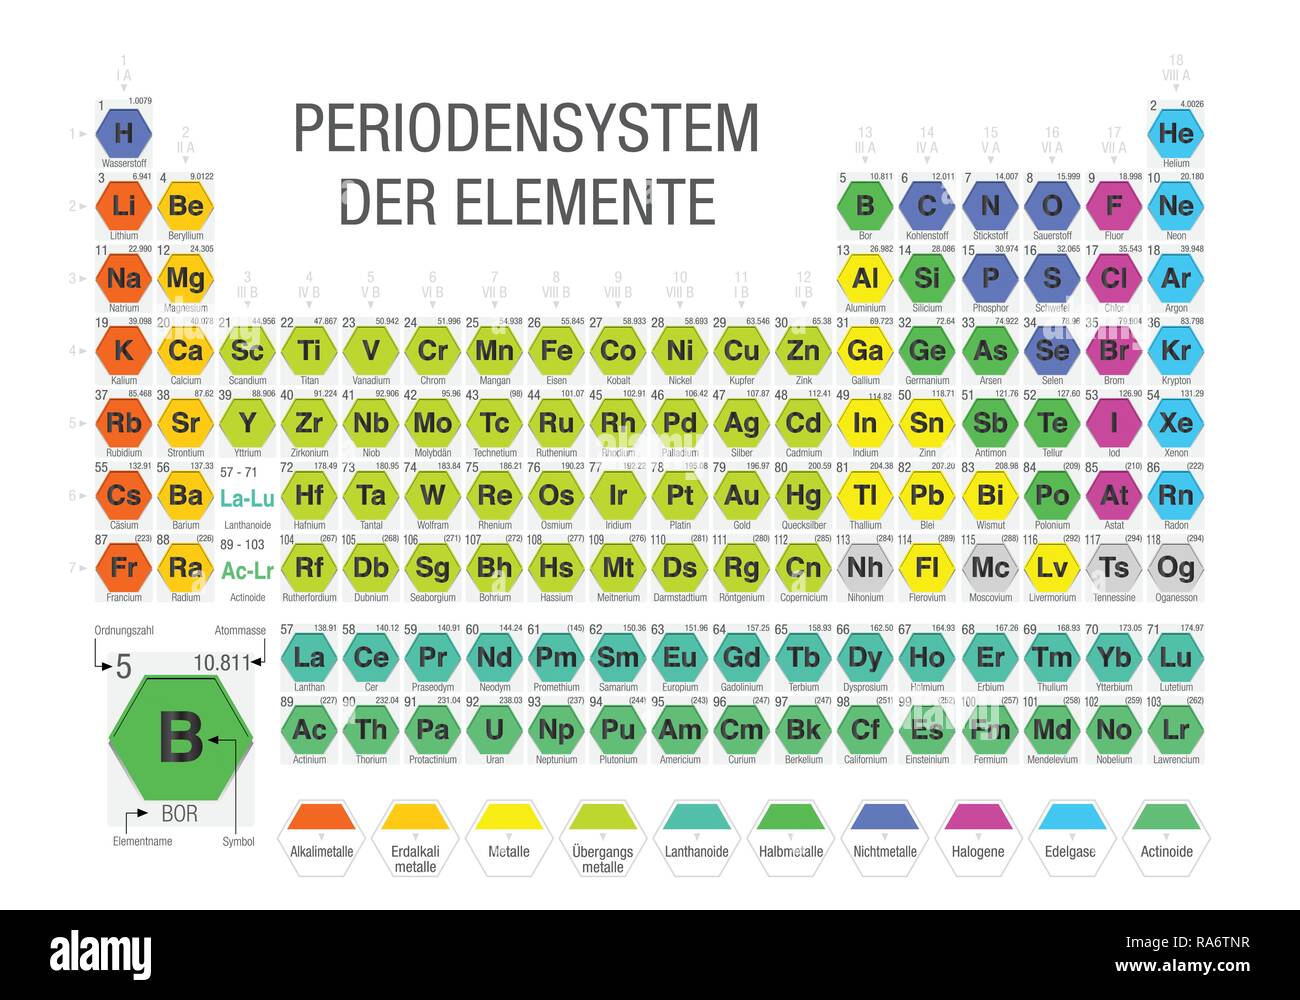 PERIODENSYSTEM DER ELEMENTE - Tableau périodique des éléments en langue allemande- formé par des modules sous la forme d'hexagones en fond blanc Illustration de Vecteur